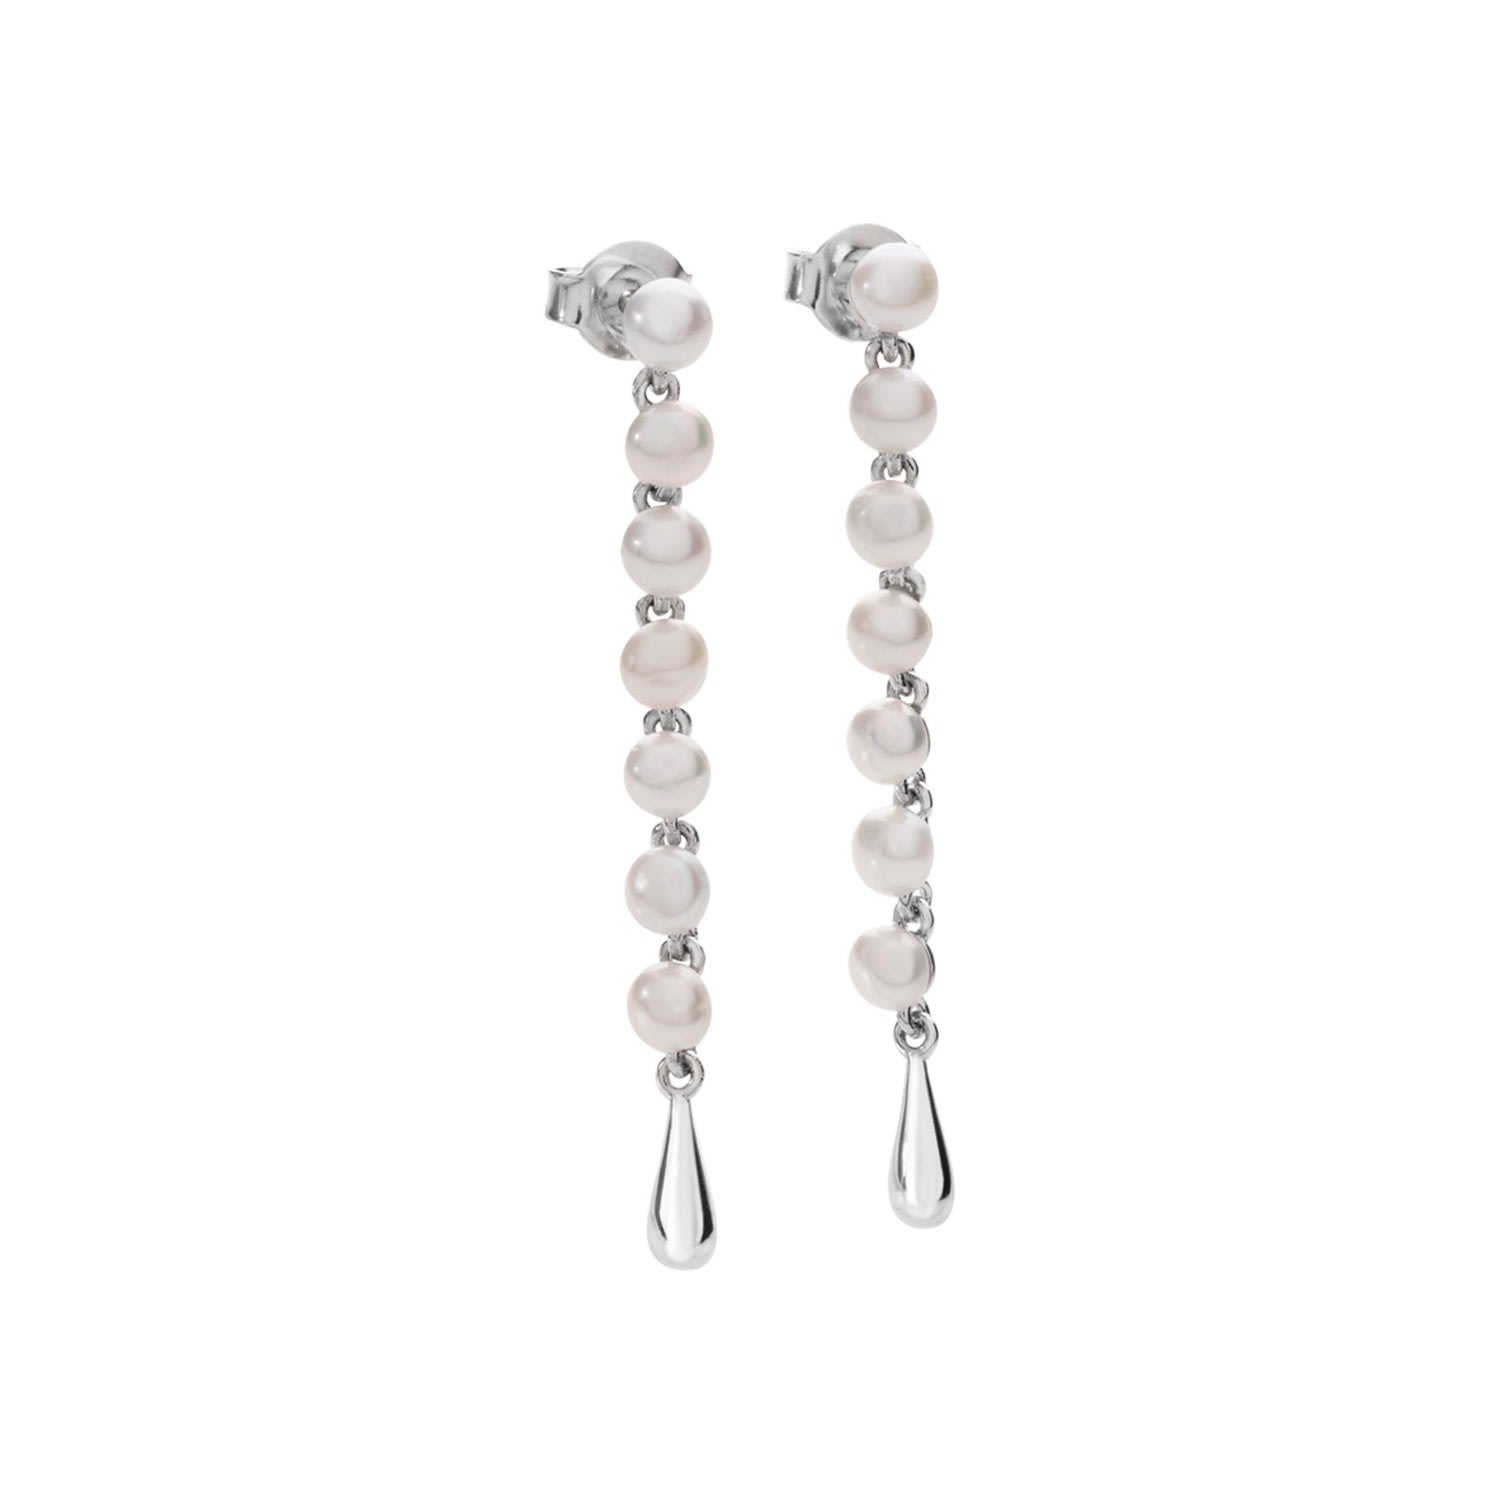 Lucy Quartermaine Women's Silver Royal Pearl Drop Earrings